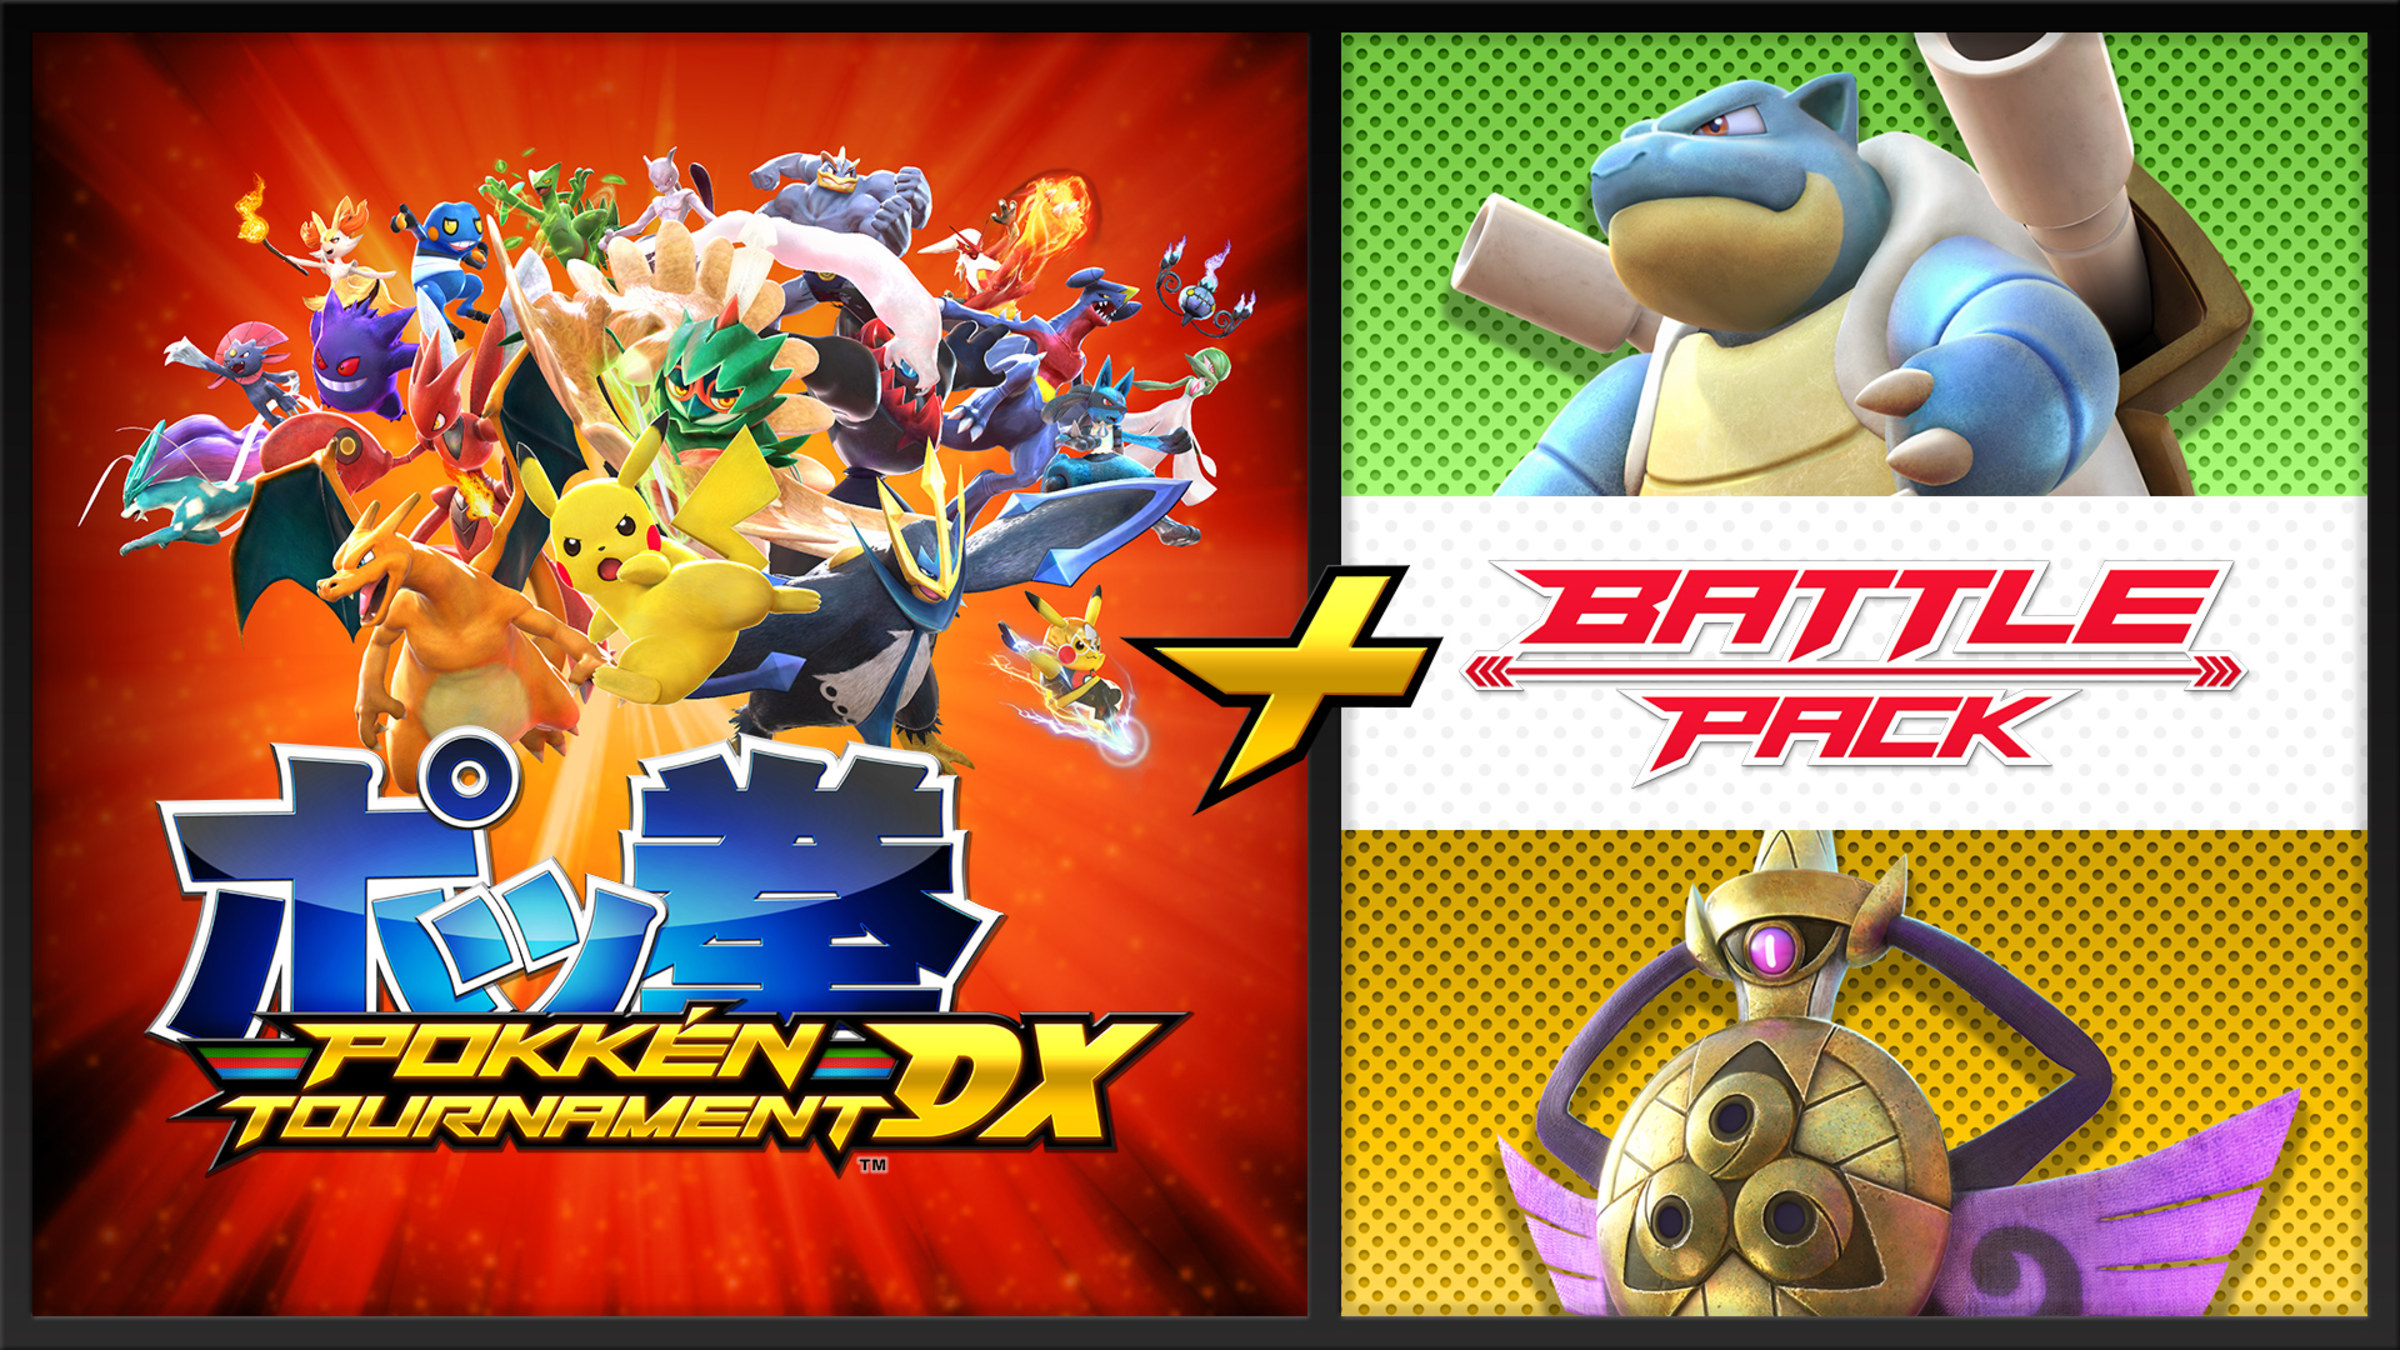 4 novos Pokémon de suporte são anunciados para Pokkén Tournament - NParty